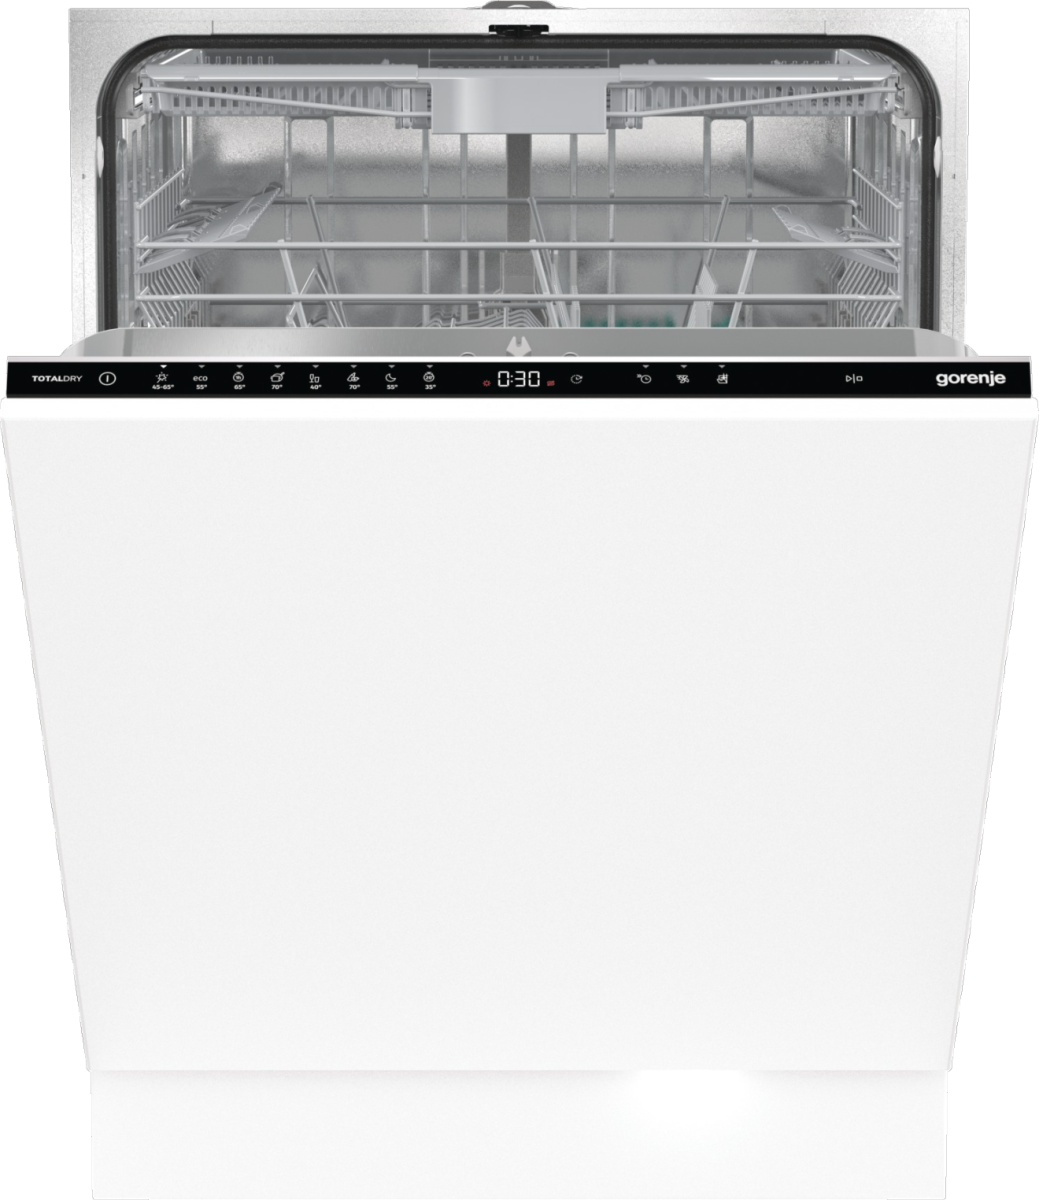 Встраиваемая посудомоечная машина Gorenje GV663D60 встраиваемая посудомоечная машина gorenje gv561d10